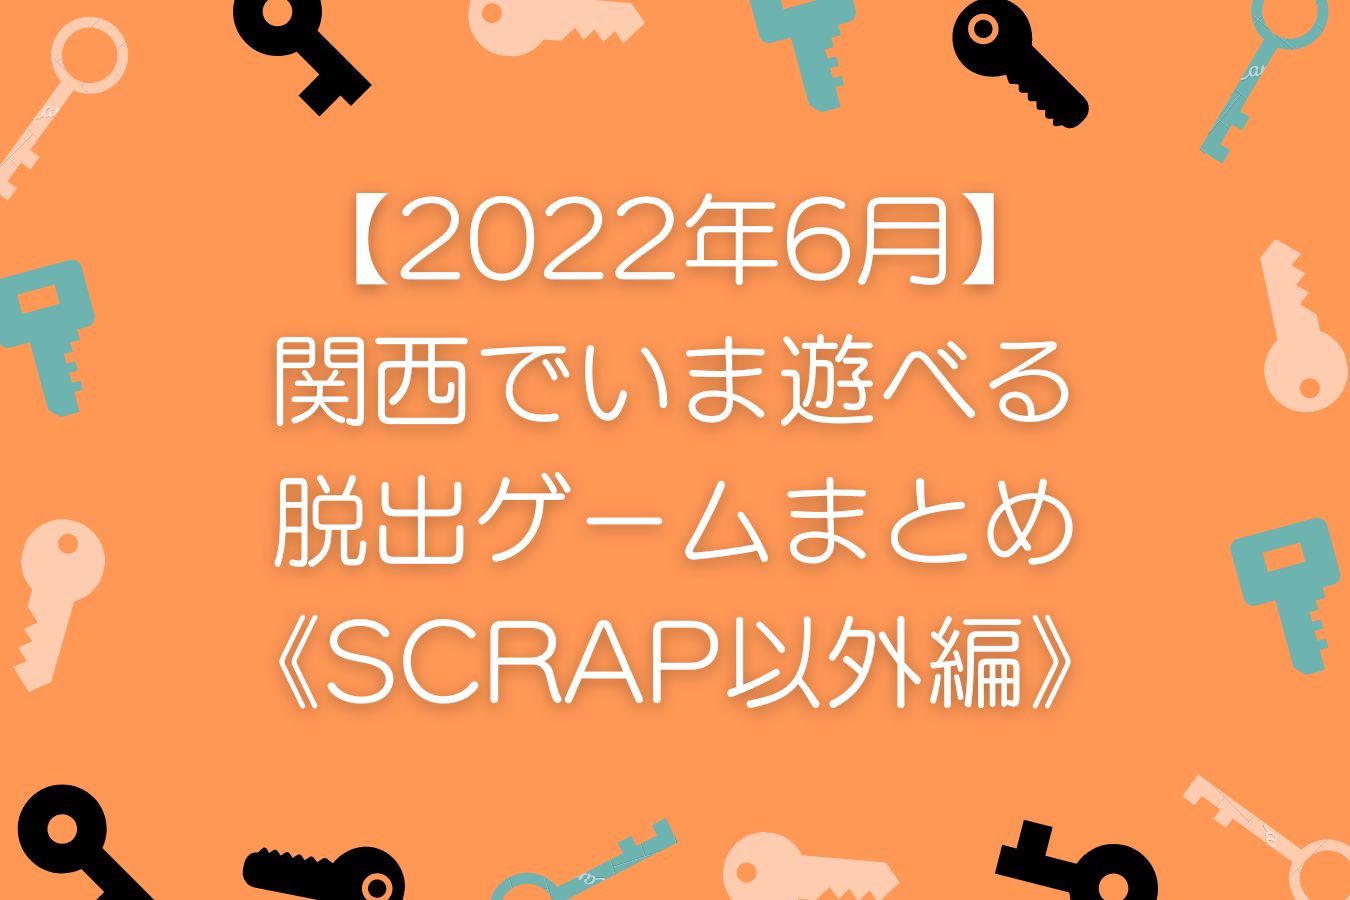 【2022年6月】-関西でいま遊べる-リアル脱出ゲームまとめ-《SCRAP以外編》